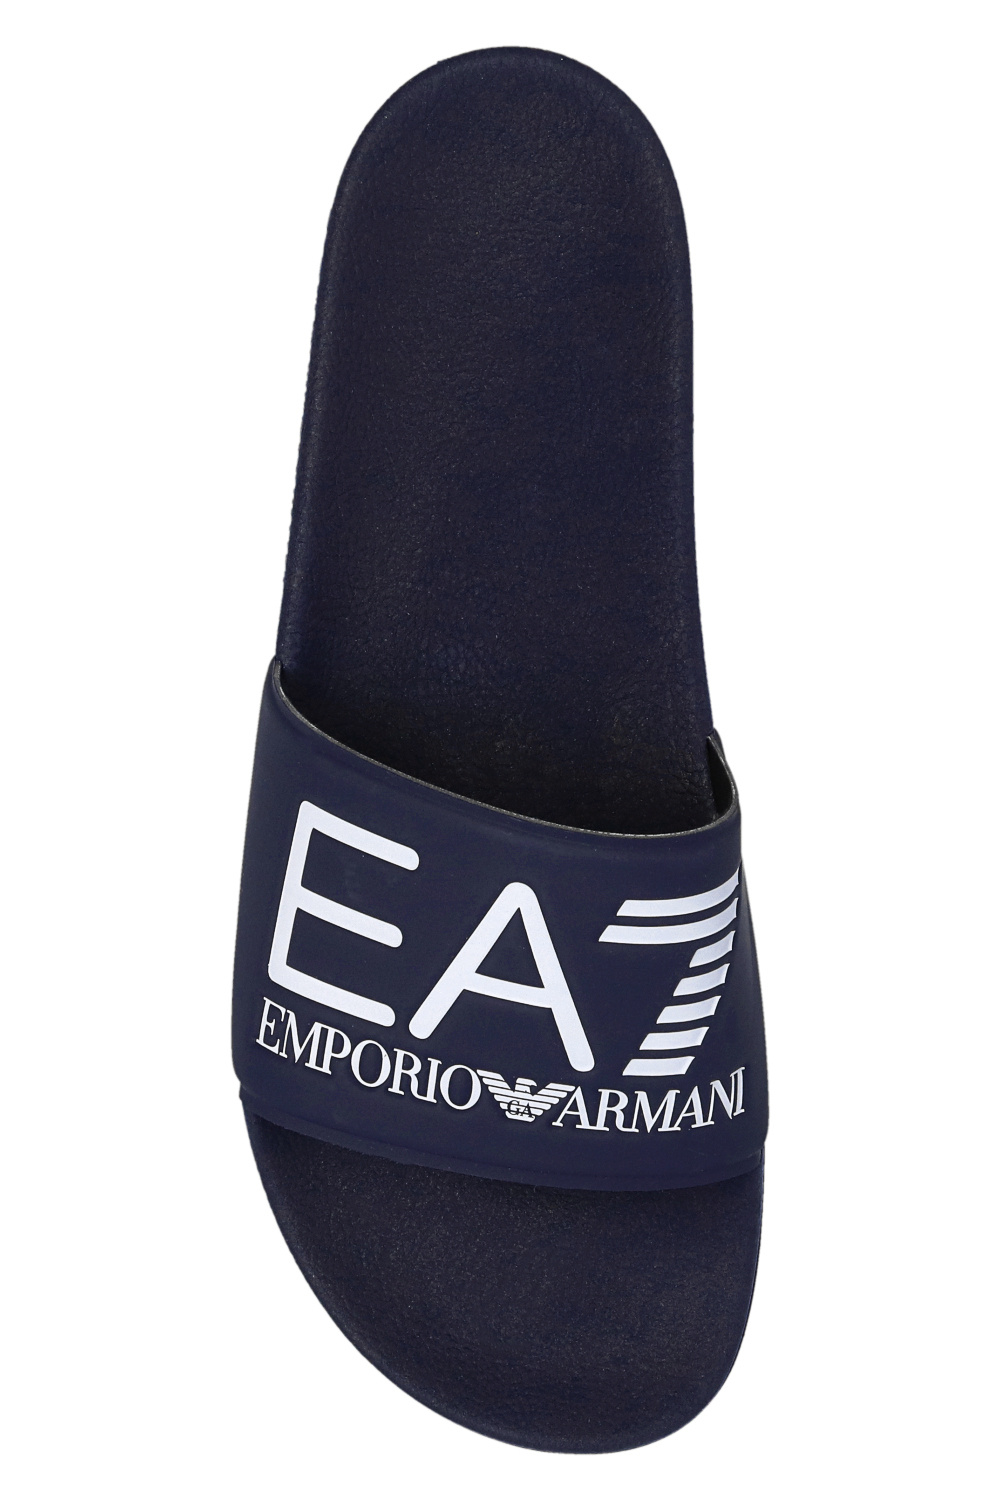 Armani Emporio zigzag IetpShops double-breasted | - Giorgio print | blazer Men\'s shirt notched-collar Shoes EA7 Armani Armani Emporio - Blau